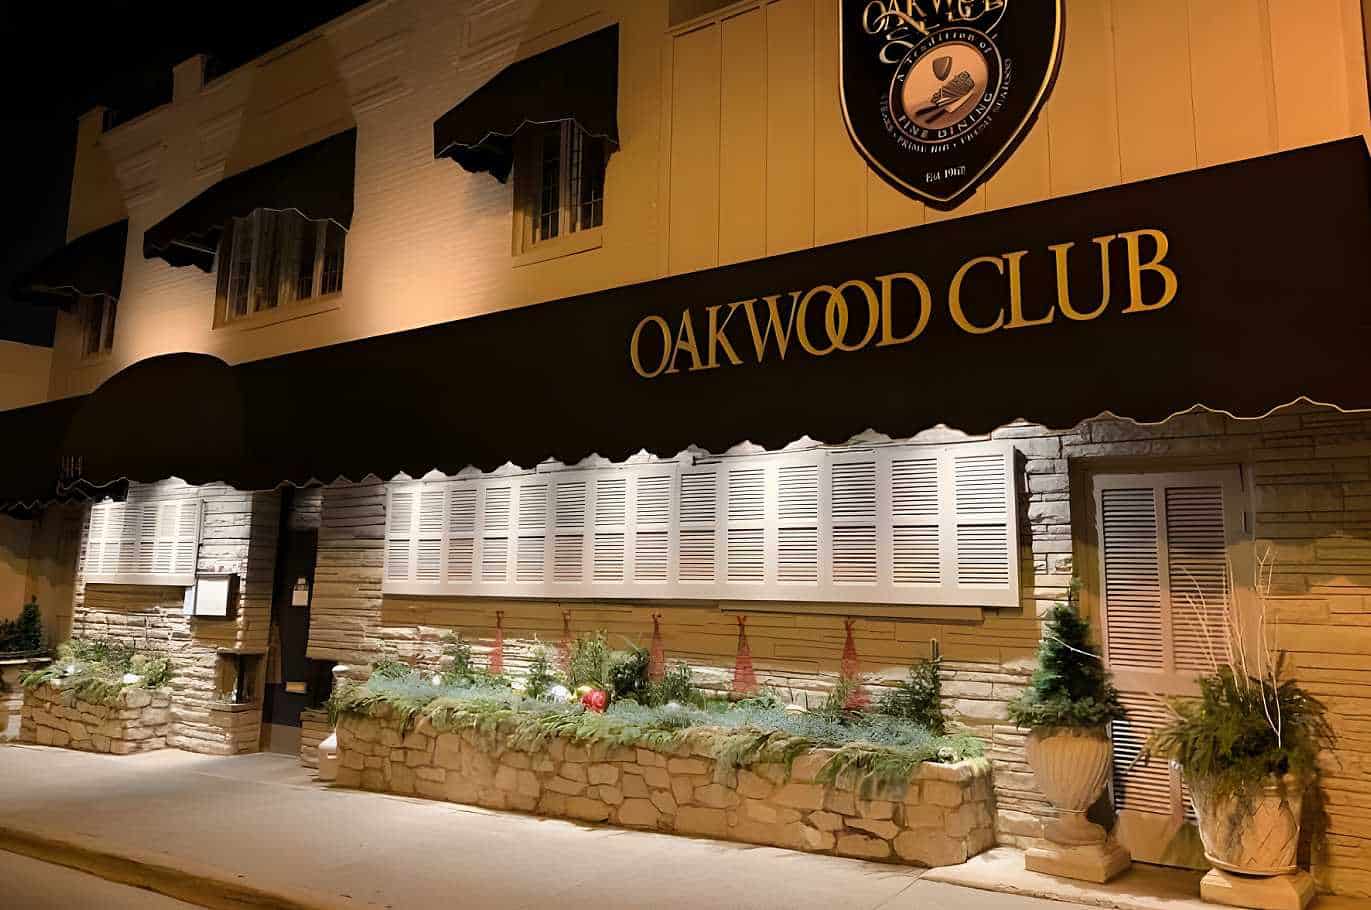 Oakwood Club Best Restaurants in Dayton, OH